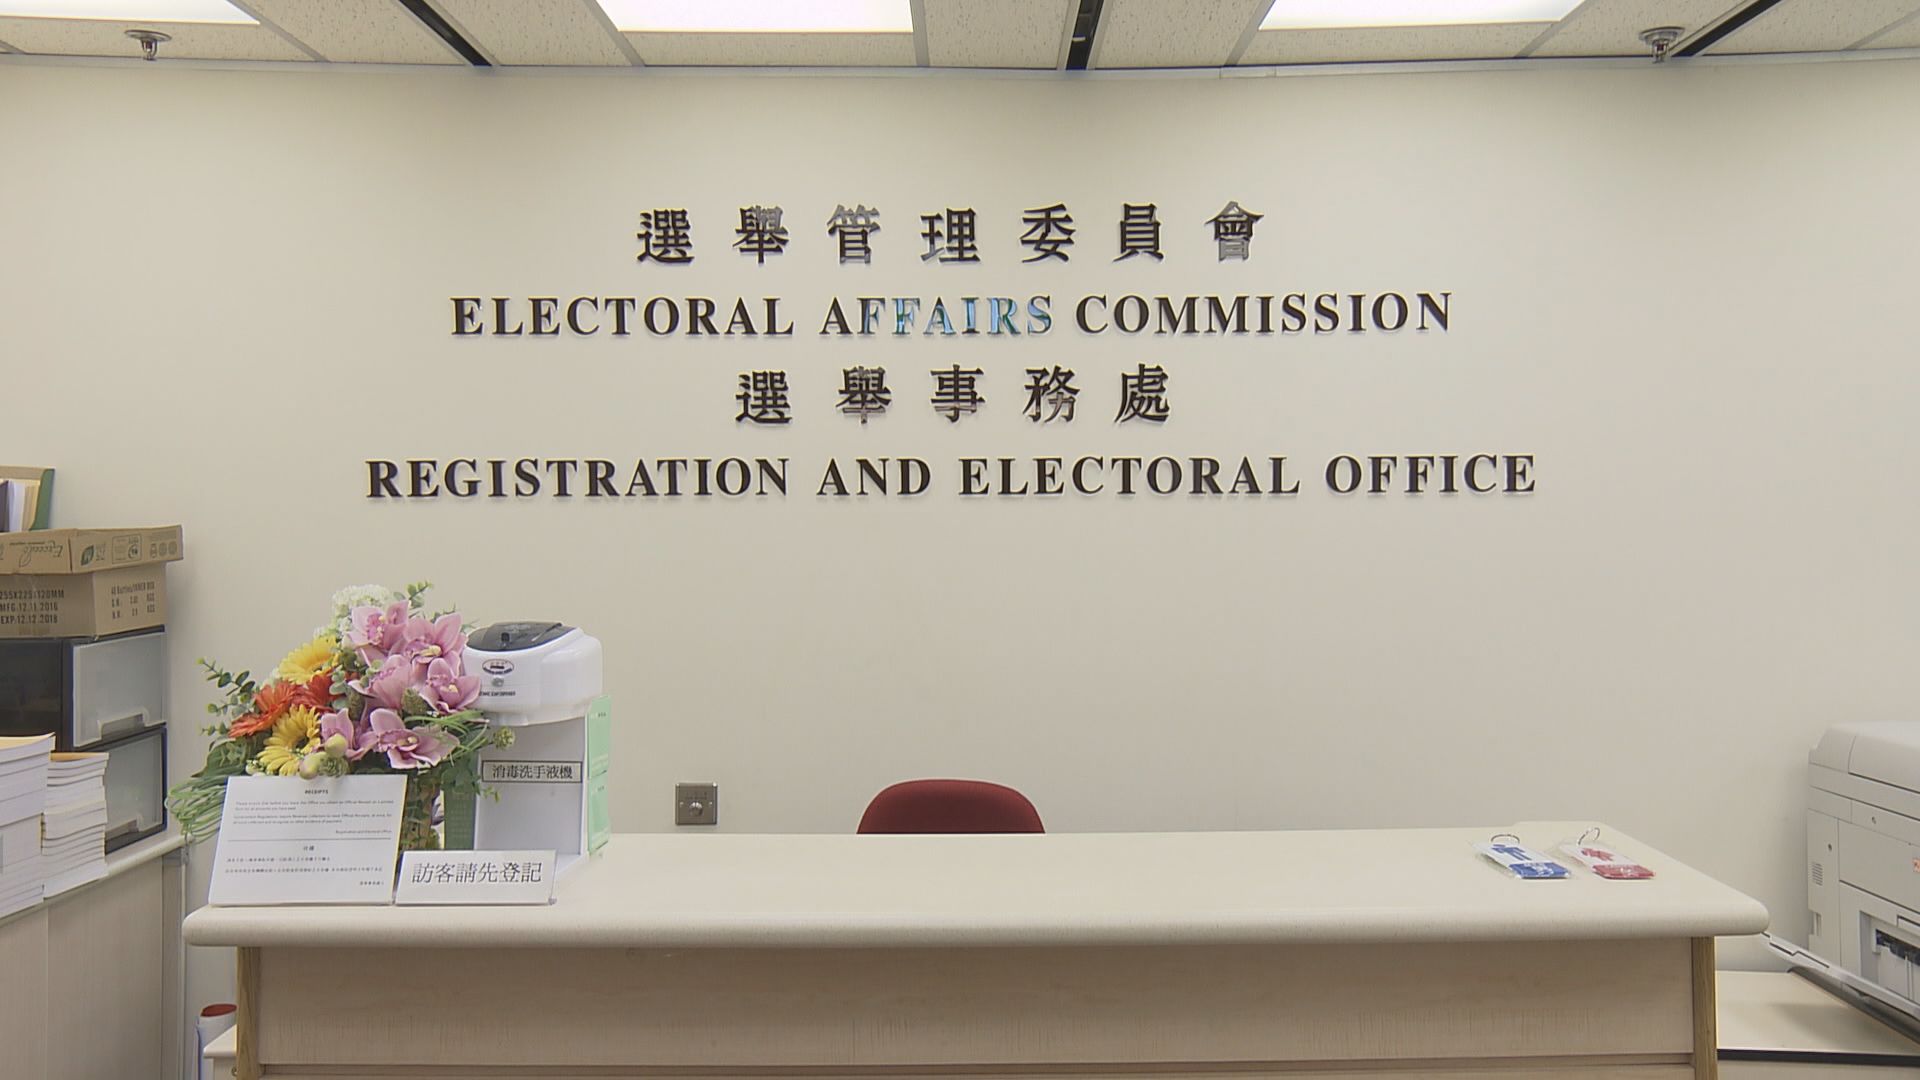 立法會九龍西補選提名期為10月2日至15日